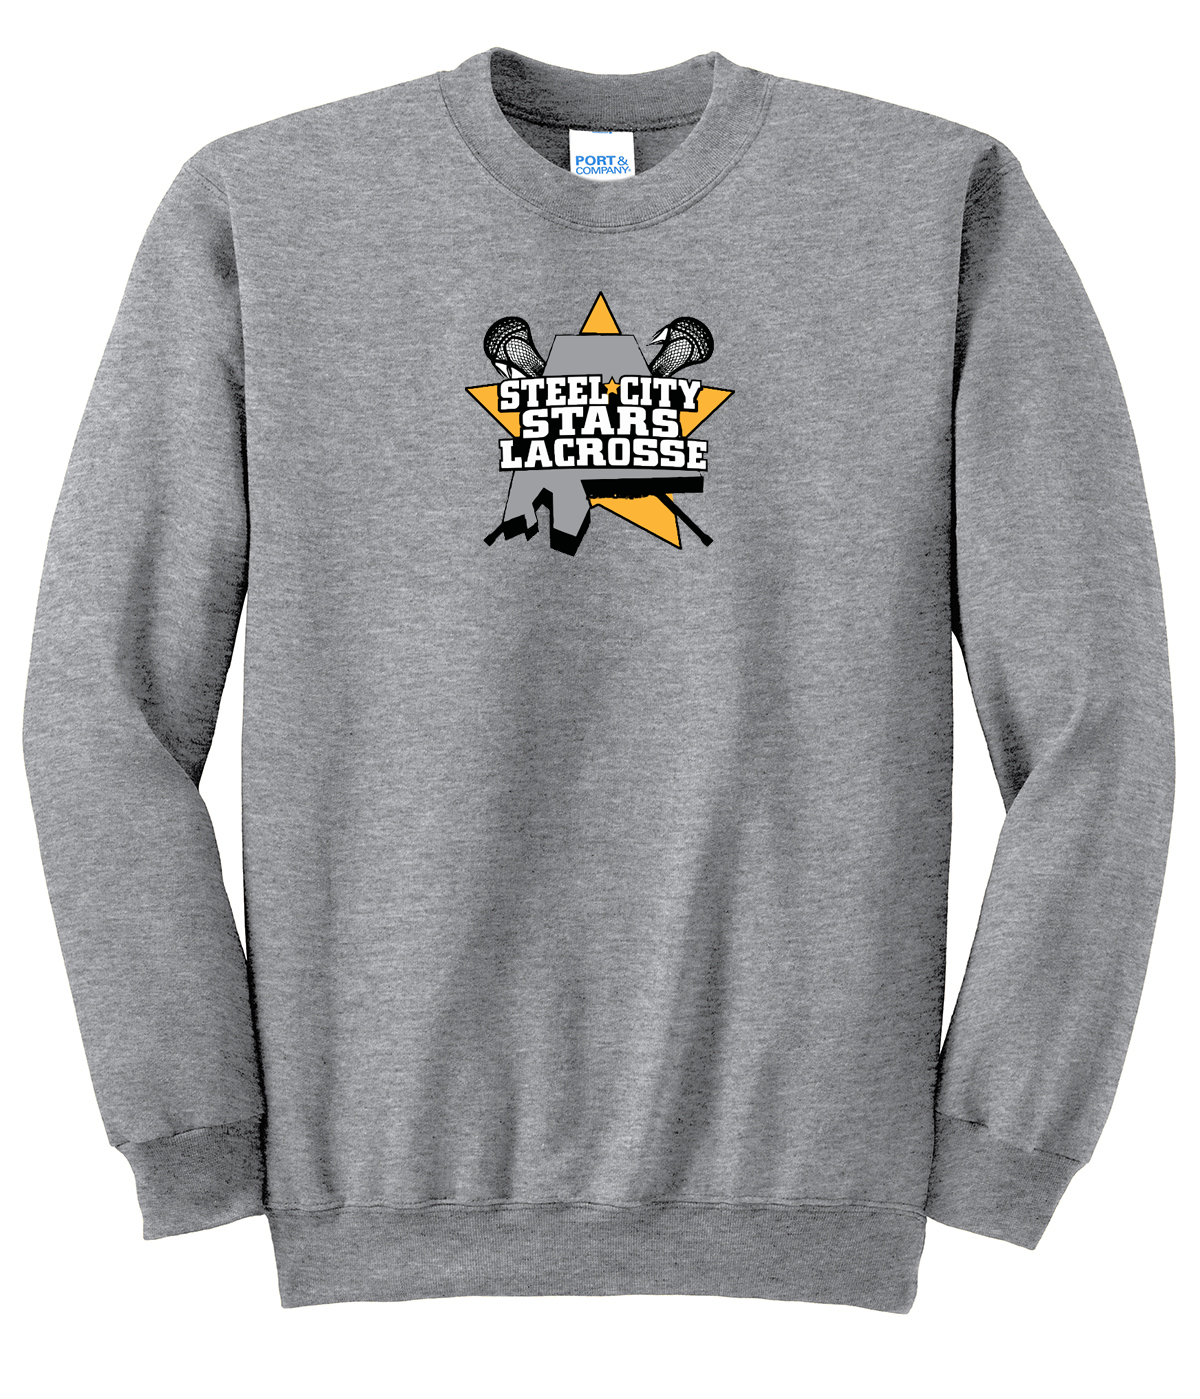 Stars Lacrosse Crew Neck Sweater